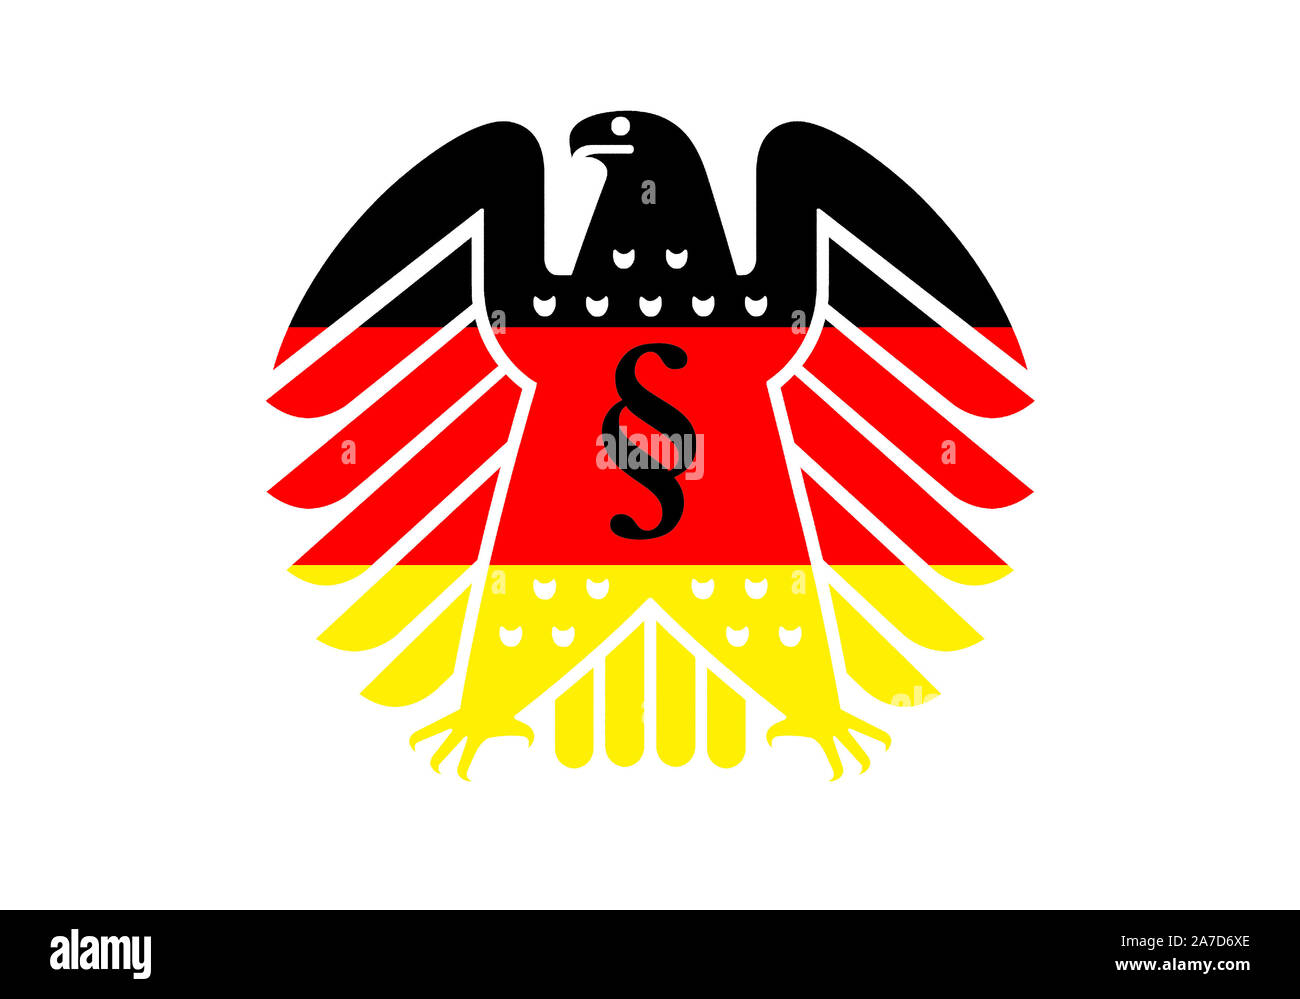 Neuer Bundesadler en den Farben schwarz-rot-oro, Wappentier der Bundesrepublik Deutschland, Foto de stock